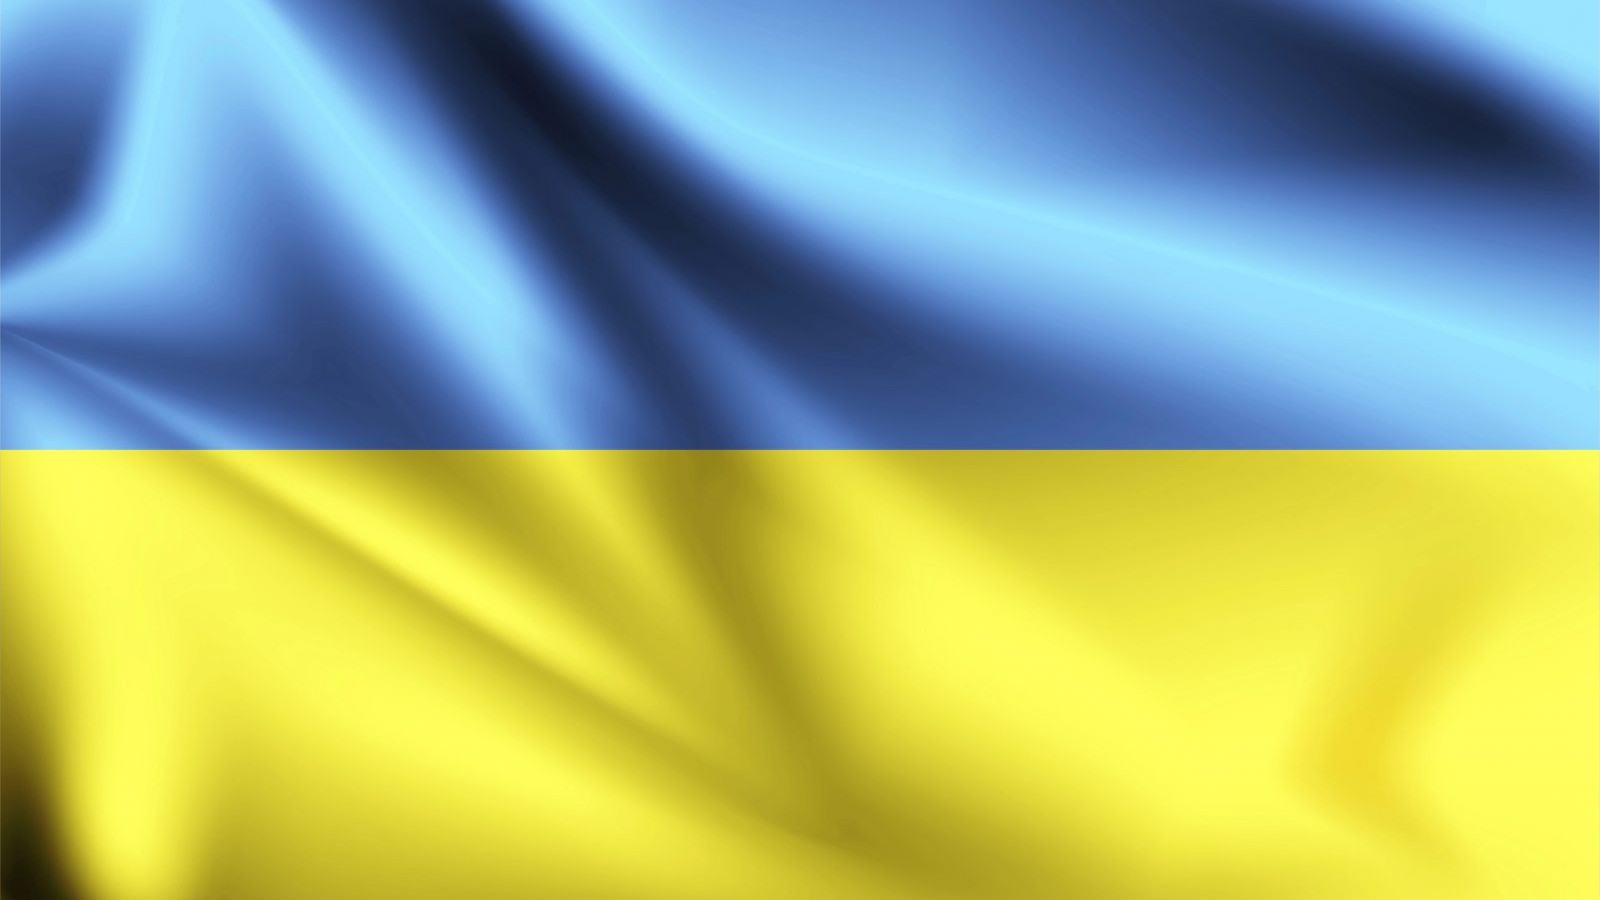 ukraine-3d-flag-with-folds-vector